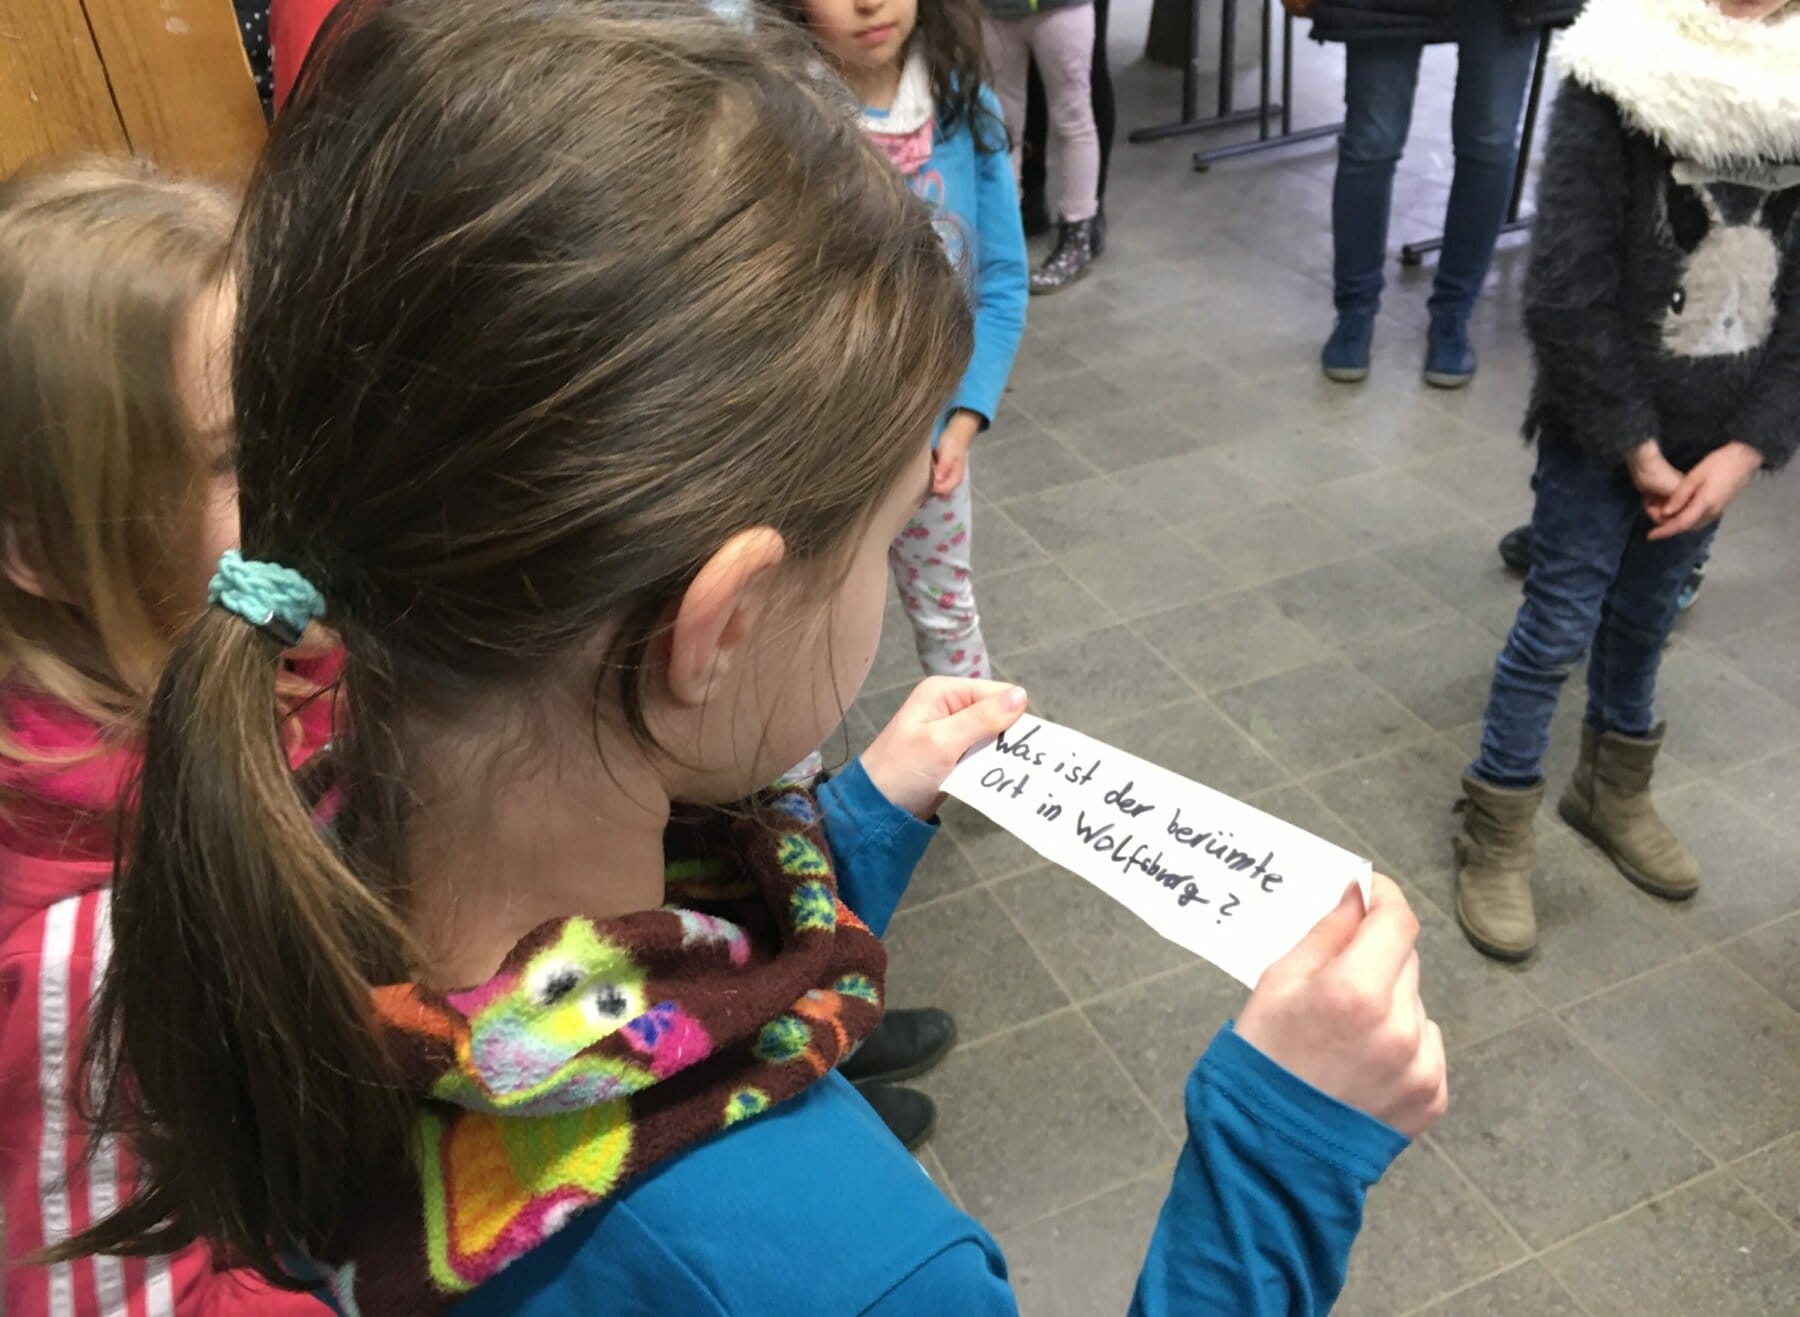 Kind hält Zettel mit Text in der Hand.